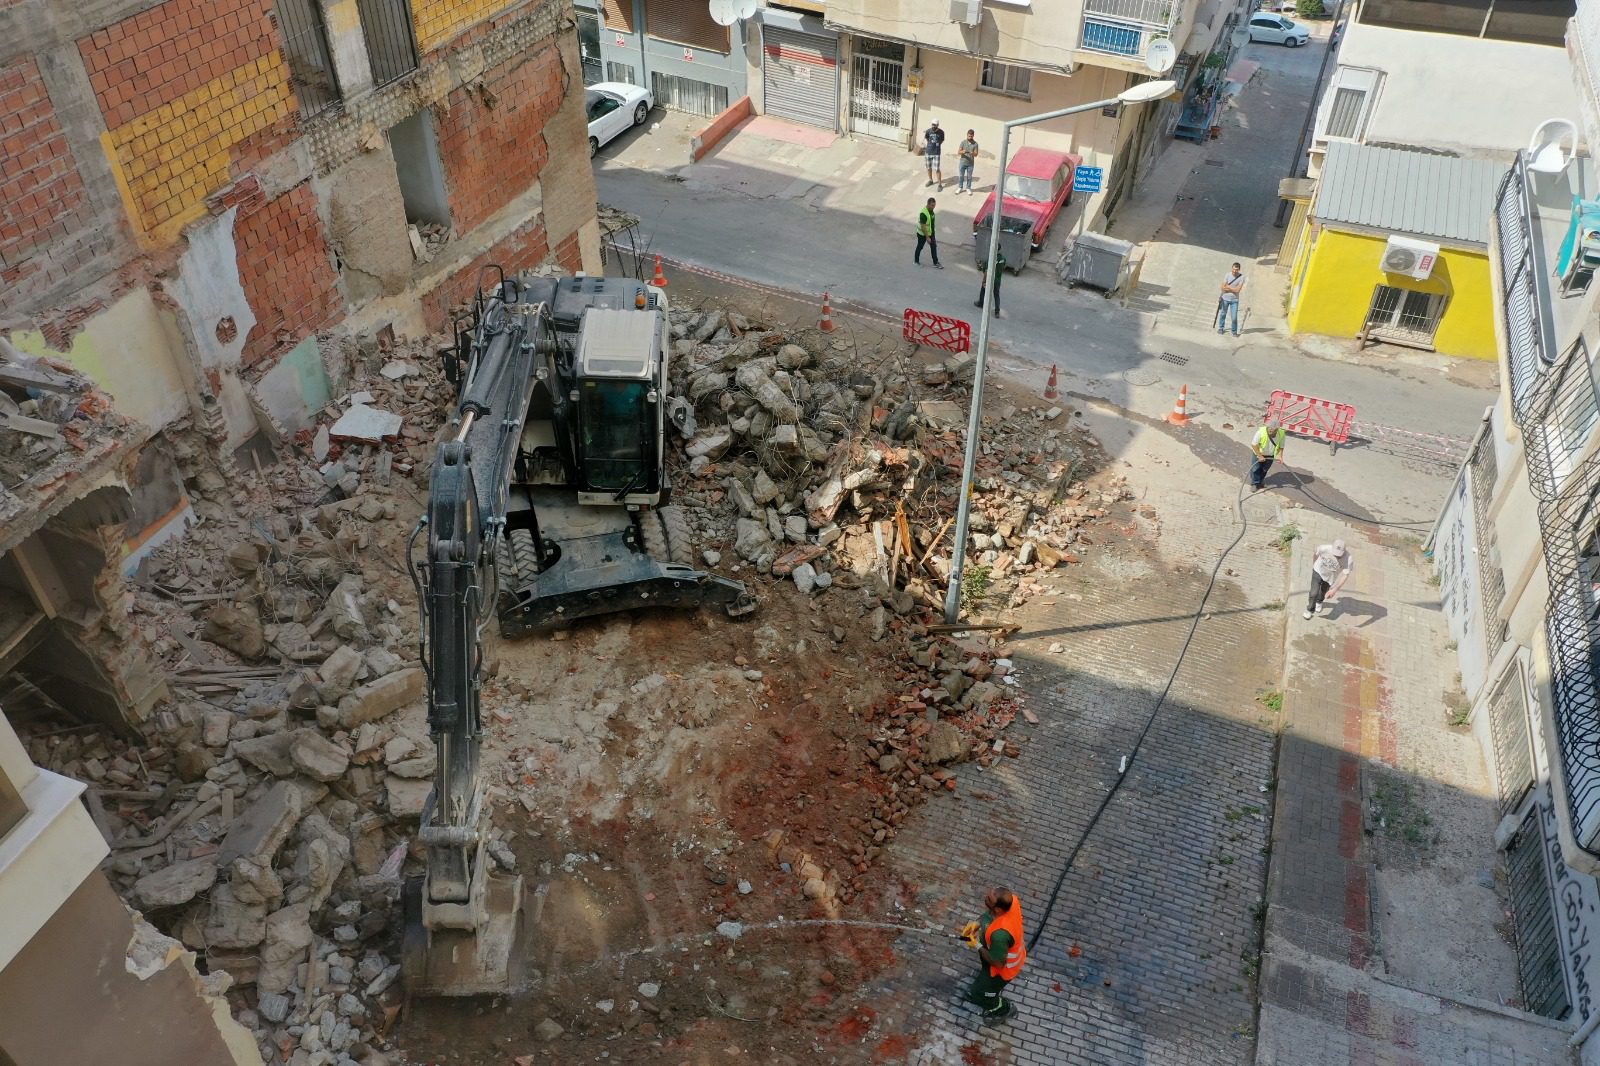 izmir depremi Konak Belediyesi Fen İşleri Müdürlüğüne bağlı yıkım ekipleri, Halilrıfatpaşa Caddesi üzerinde bulunan, vatandaşın can ve mal güvenliği ile sağlığını tehdit eden metruk binanın yıkımını gerçekleştirdi.